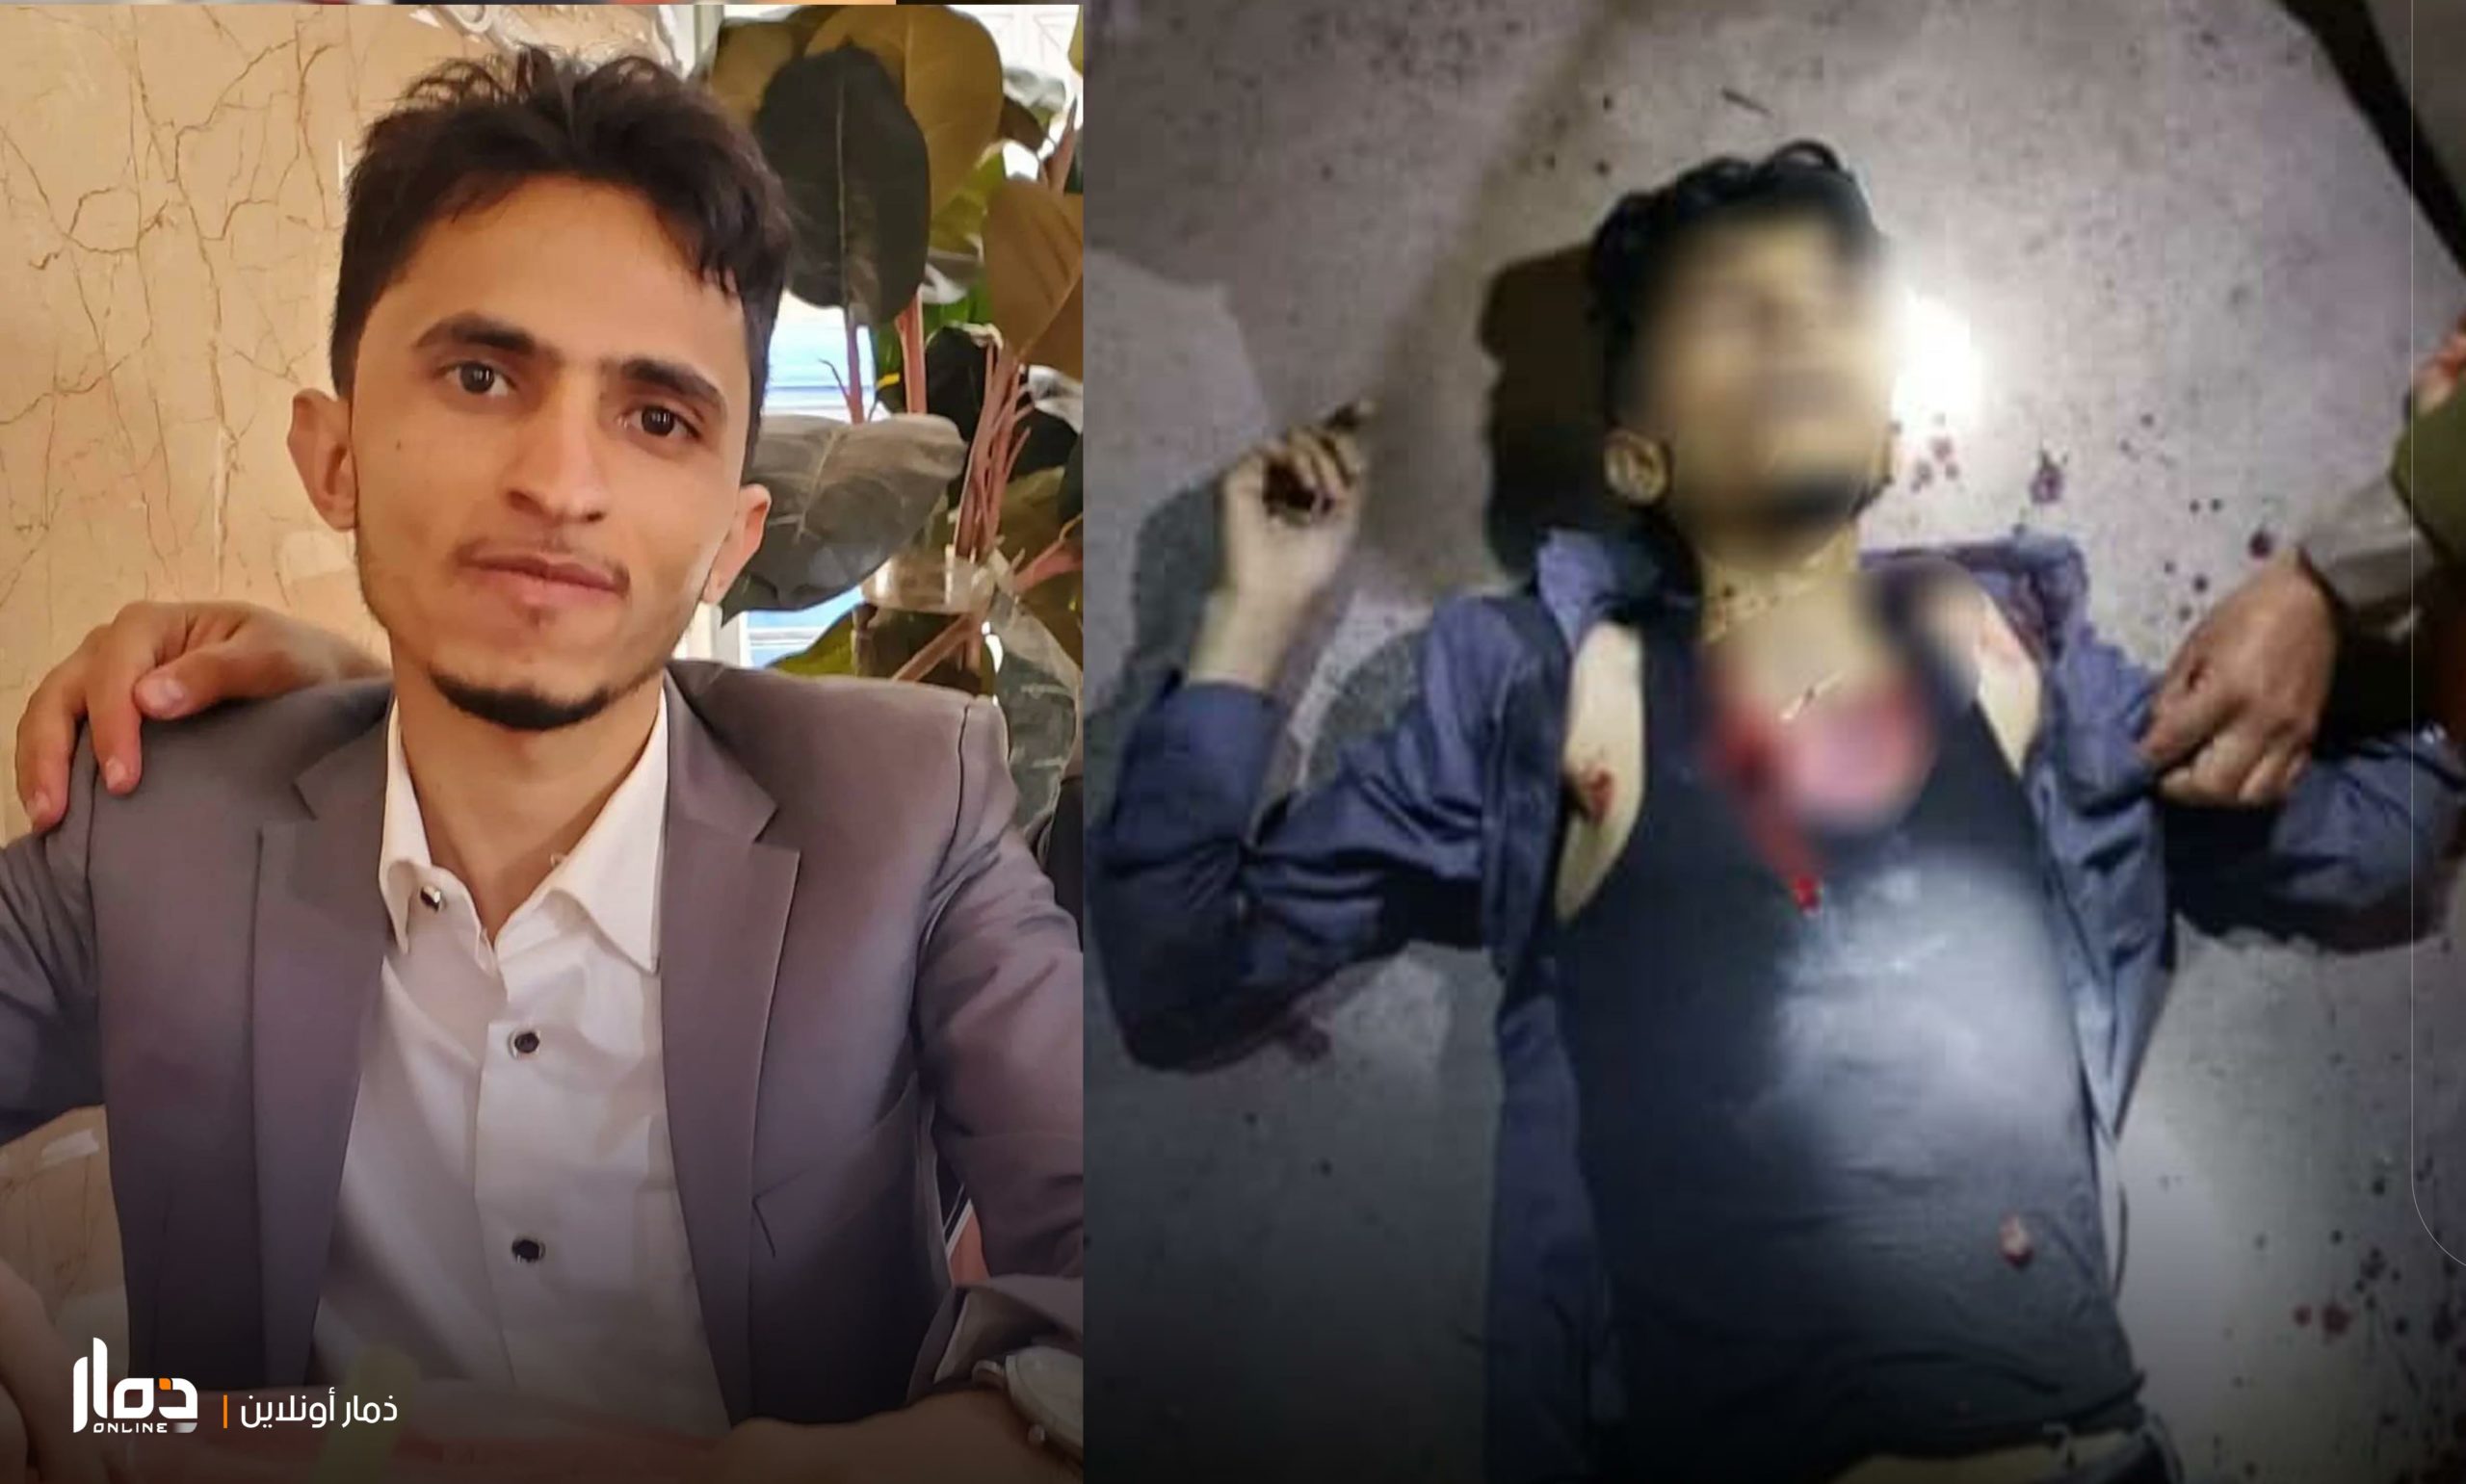 مقتل طالب طب “امتياز” برصاص مسلح في مستشفى جامعي بذمار